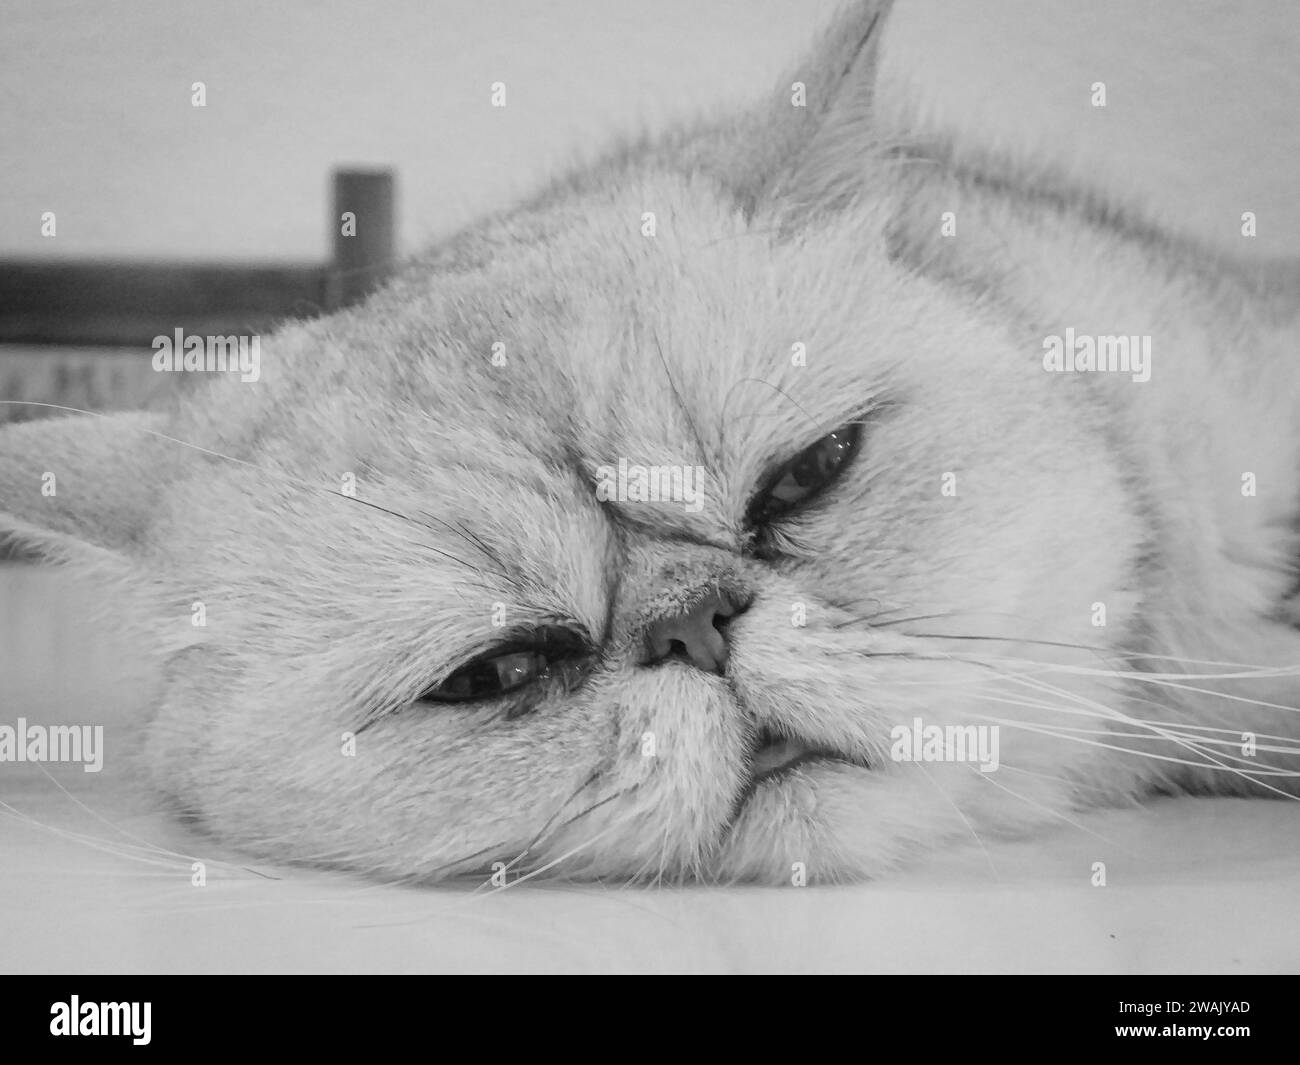 Un chat tabby repose sur une tête de lit blanche, avec ses pattes en l'air et son dos tourné vers le haut Banque D'Images